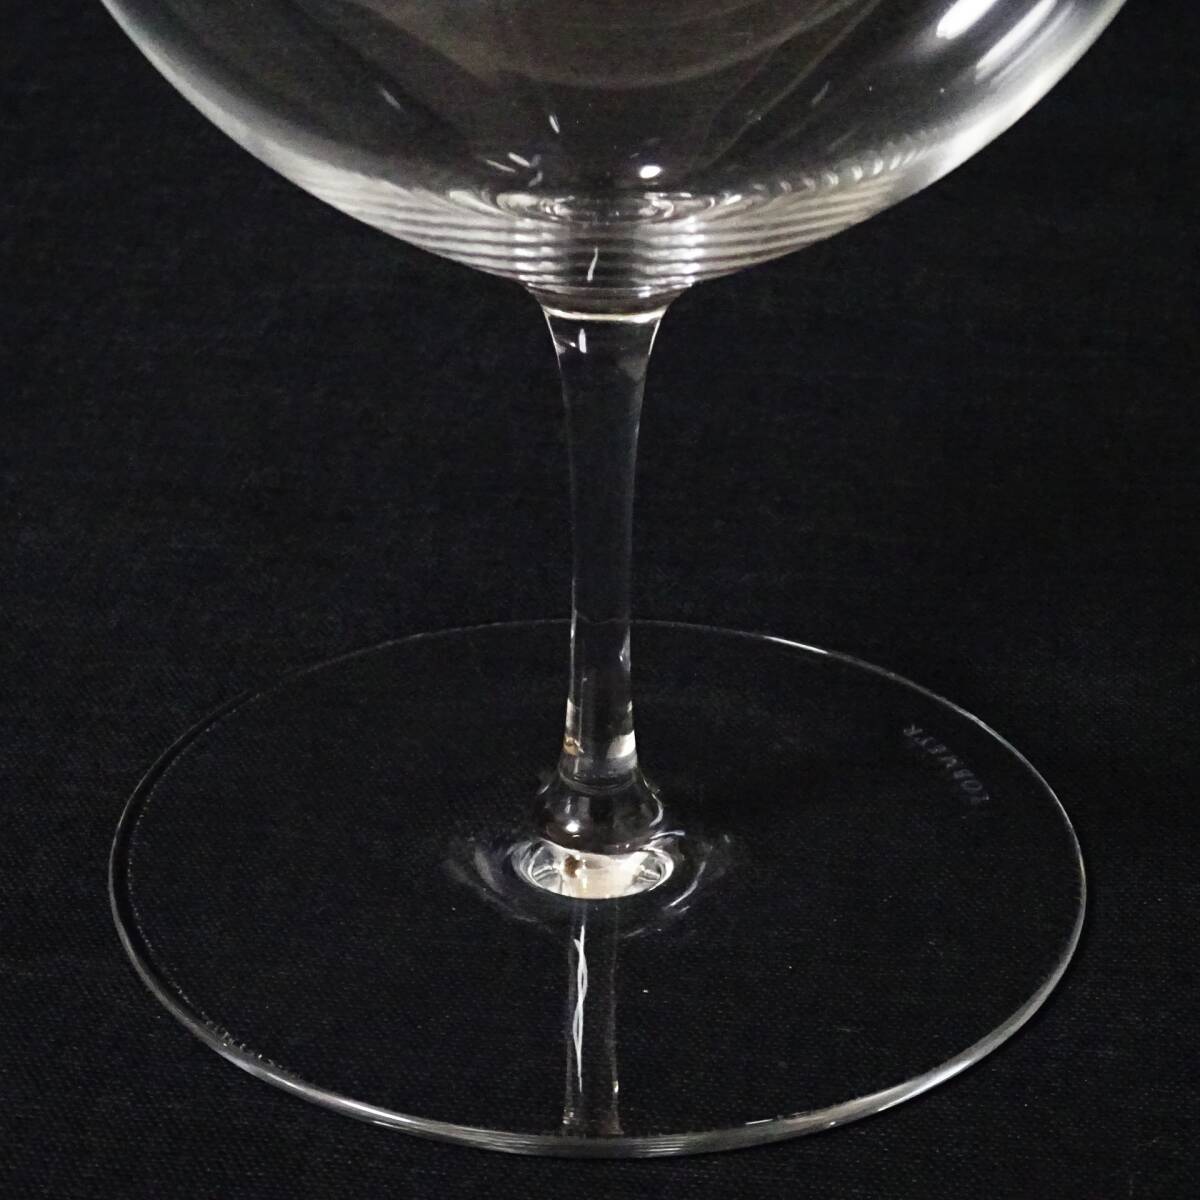  Lobb ma year ba Rely na wine glass 6 legs summarize set 18.5cm LOBMEYR 100 size shipping K-2617875-209-mrrz